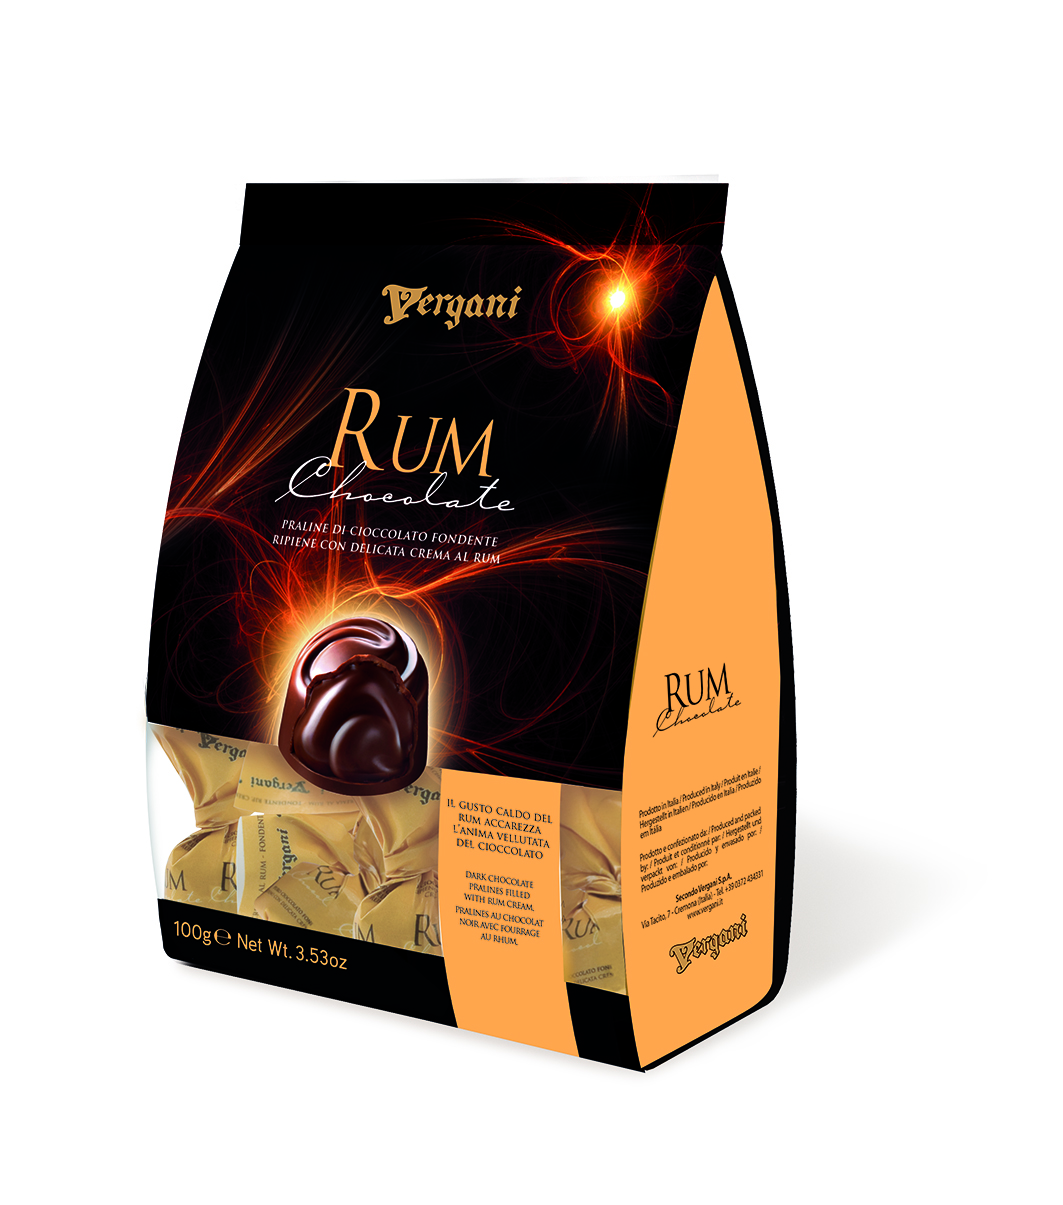 Praline di cioccolato fondente ripiene con crema al rum gr 100 pz x ct 20 VERGANI